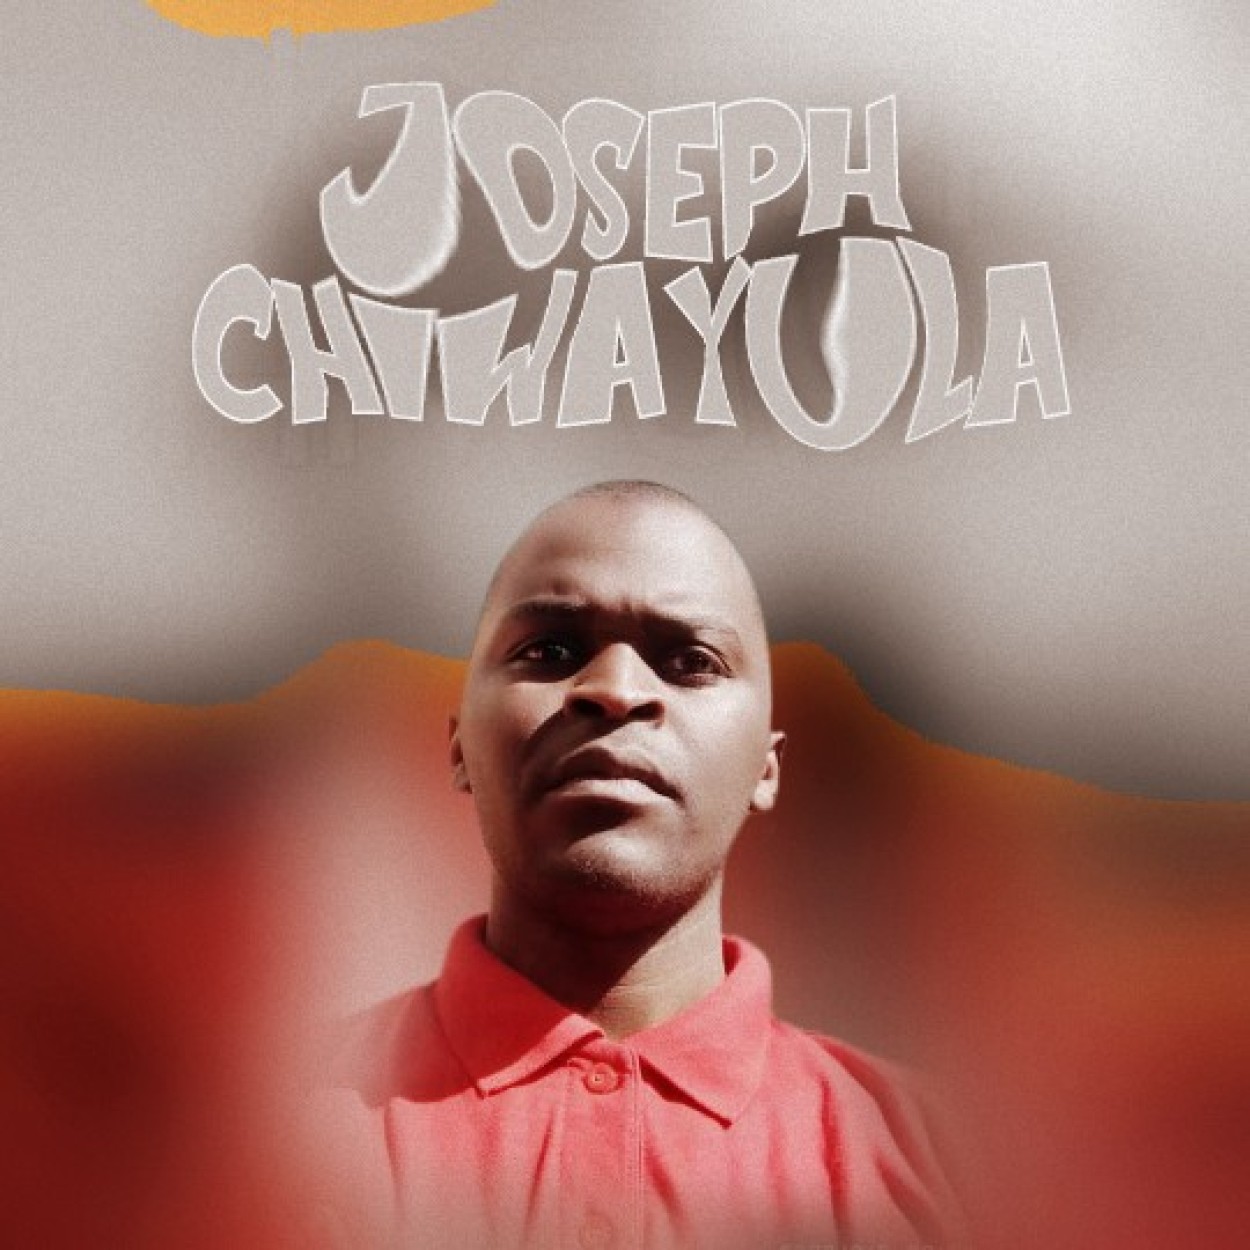 Joseph Chiwayula 